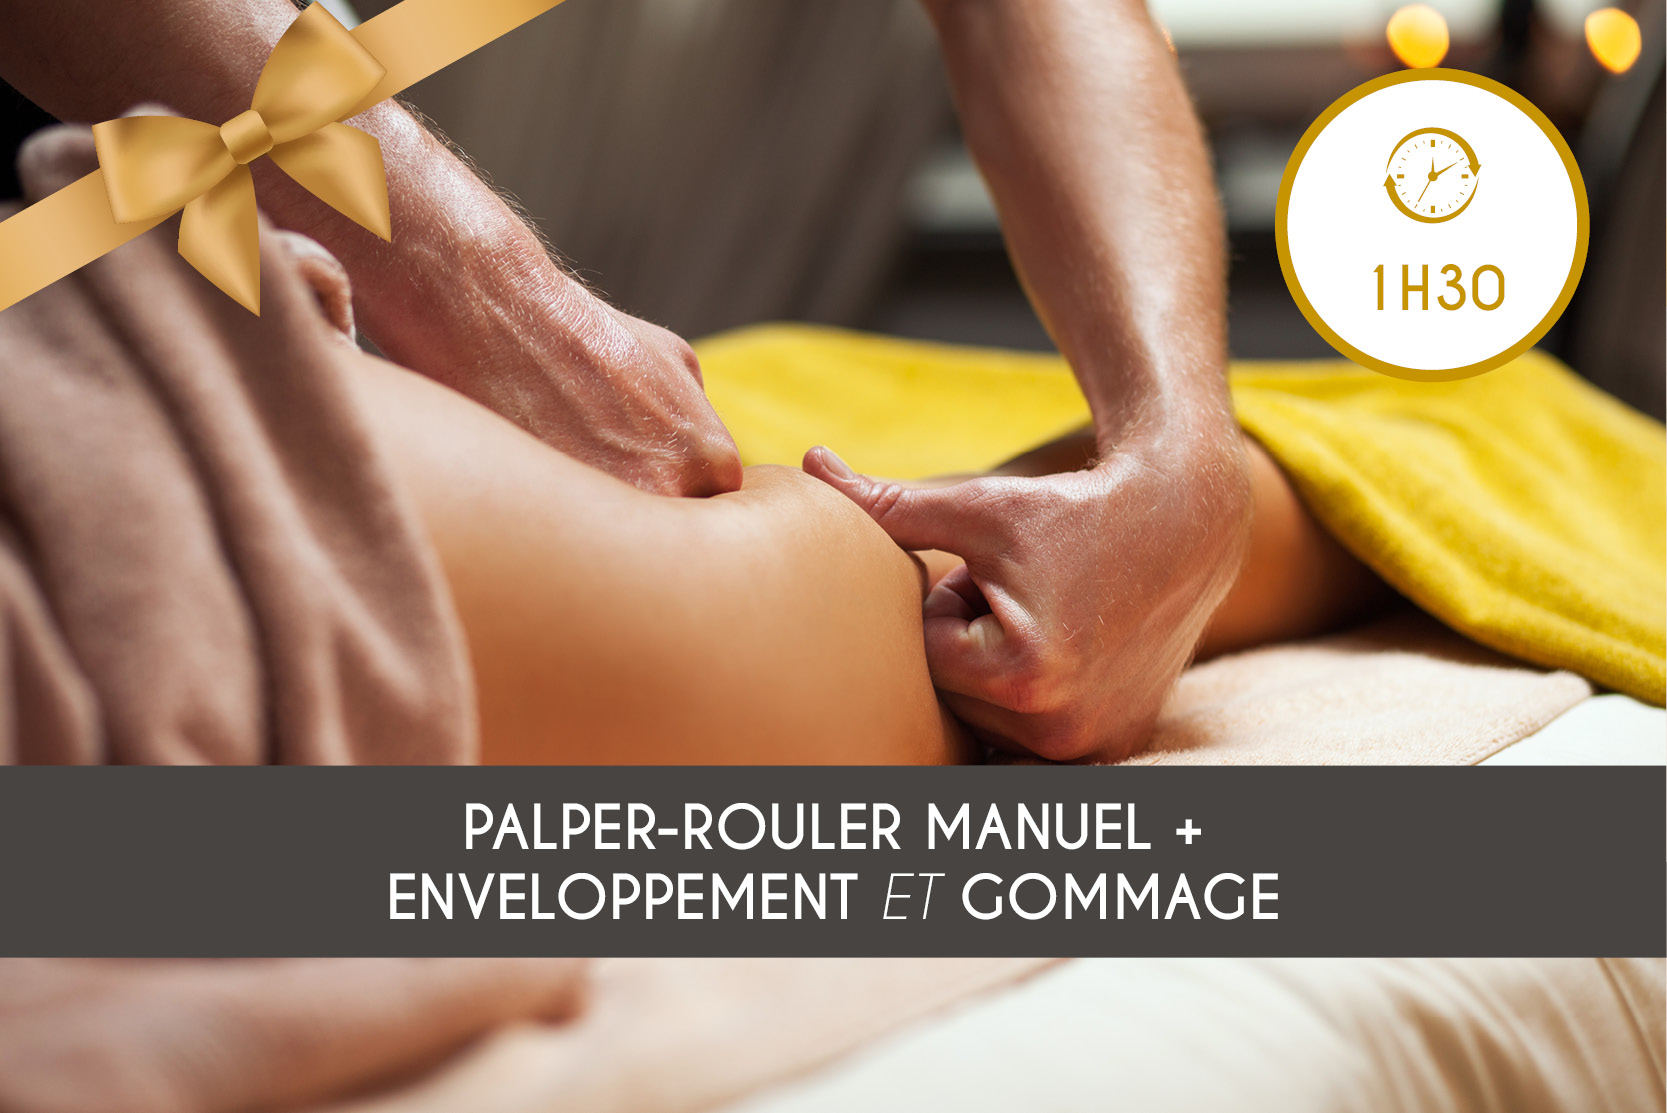 Palper-Rouler Manuel + Enveloppement + Gommage (1h30)